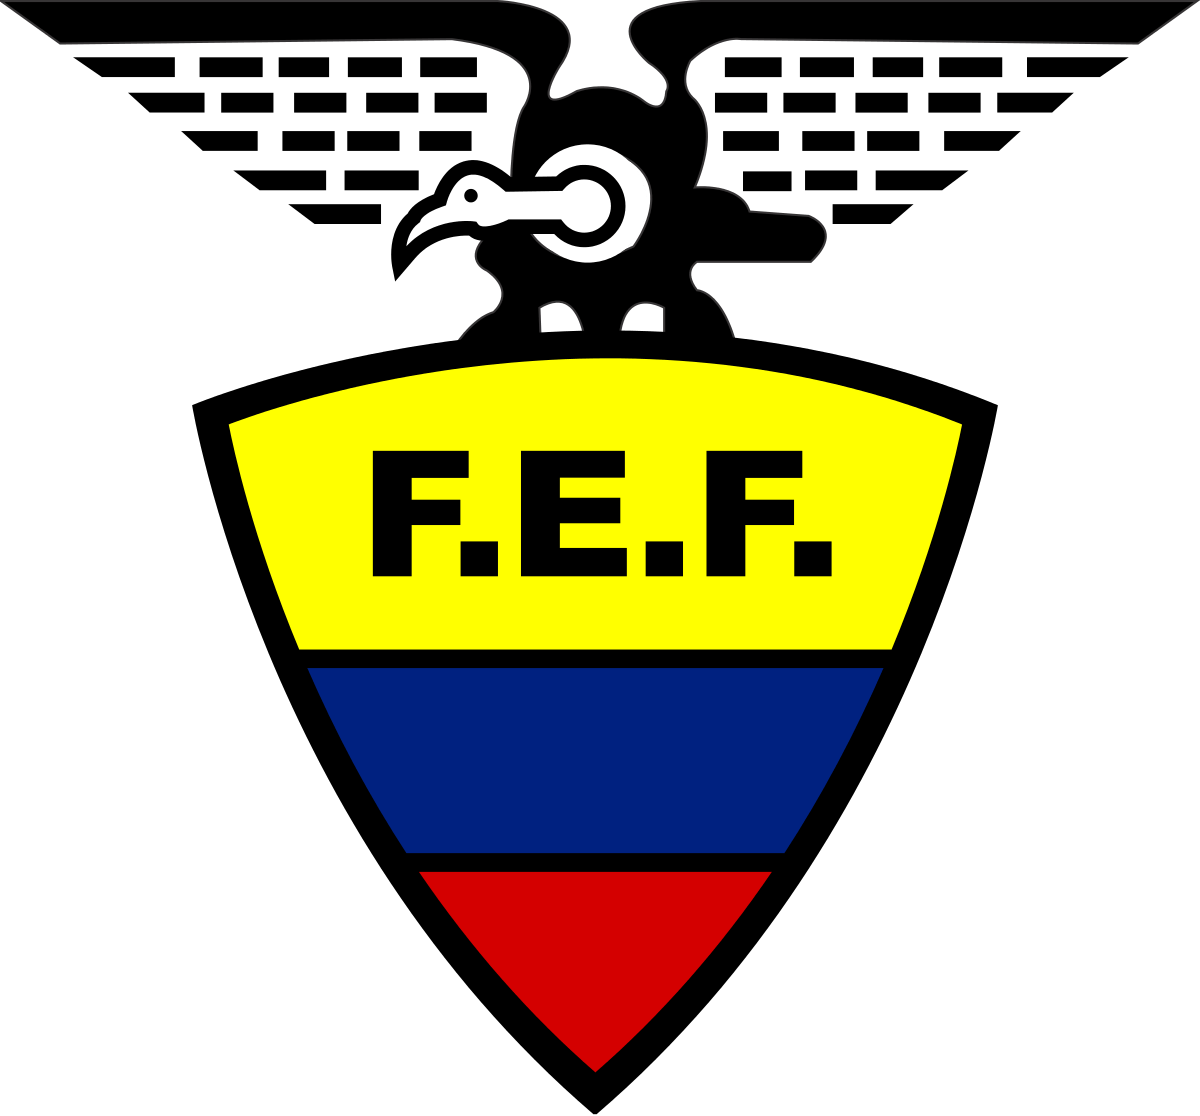 Equador Logo - Ecuador national football team